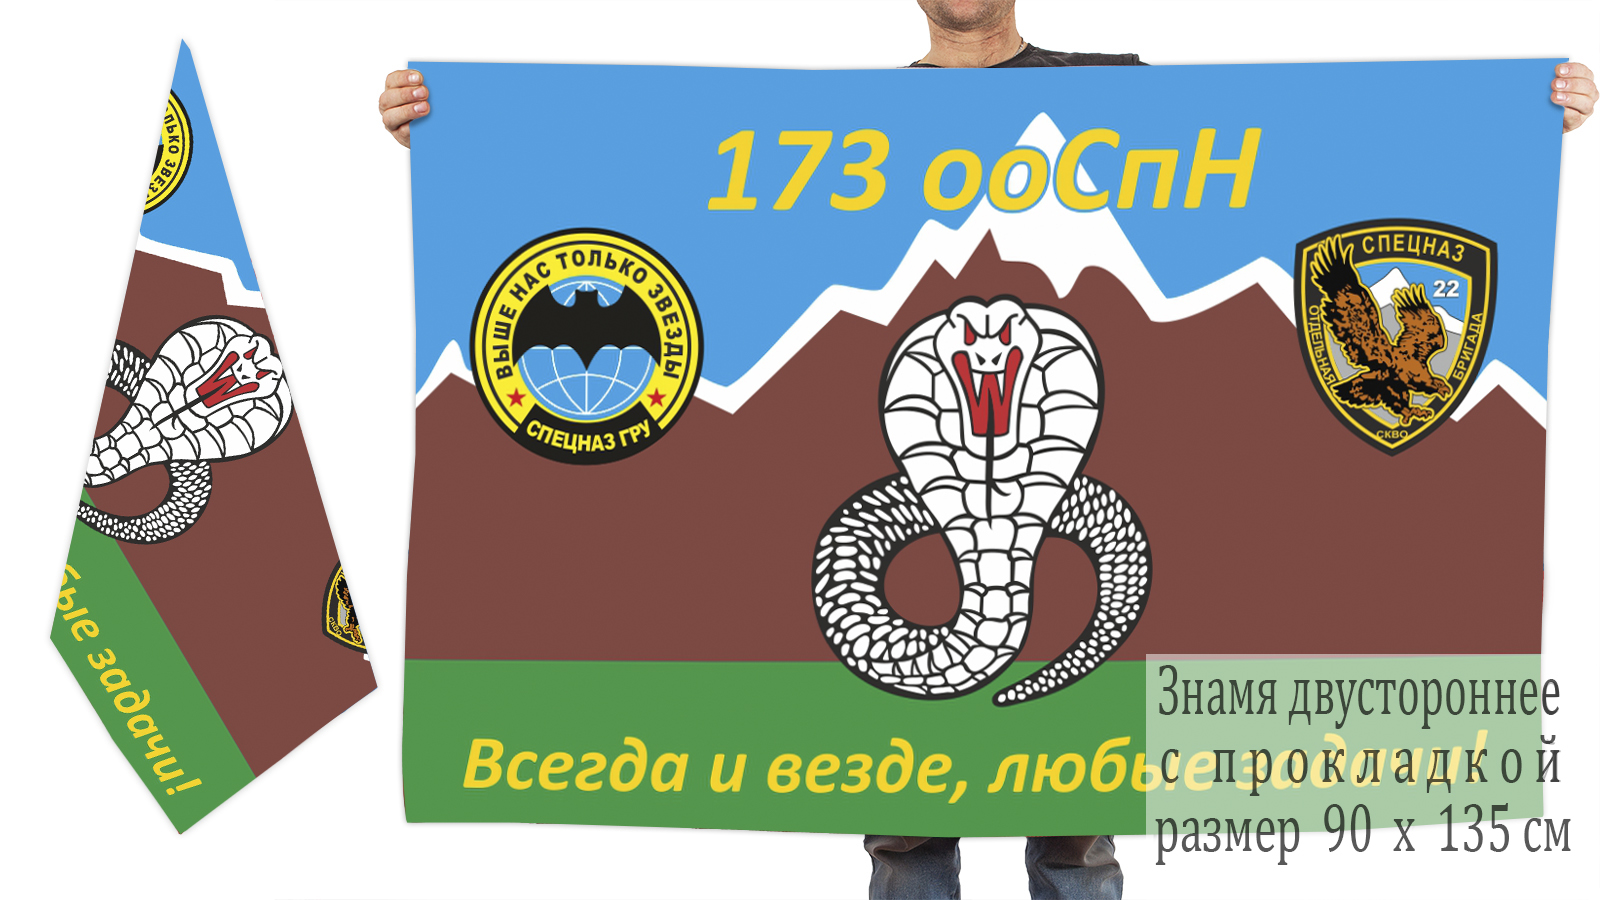 Двусторонний флаг 173 ооСпН ГРУ